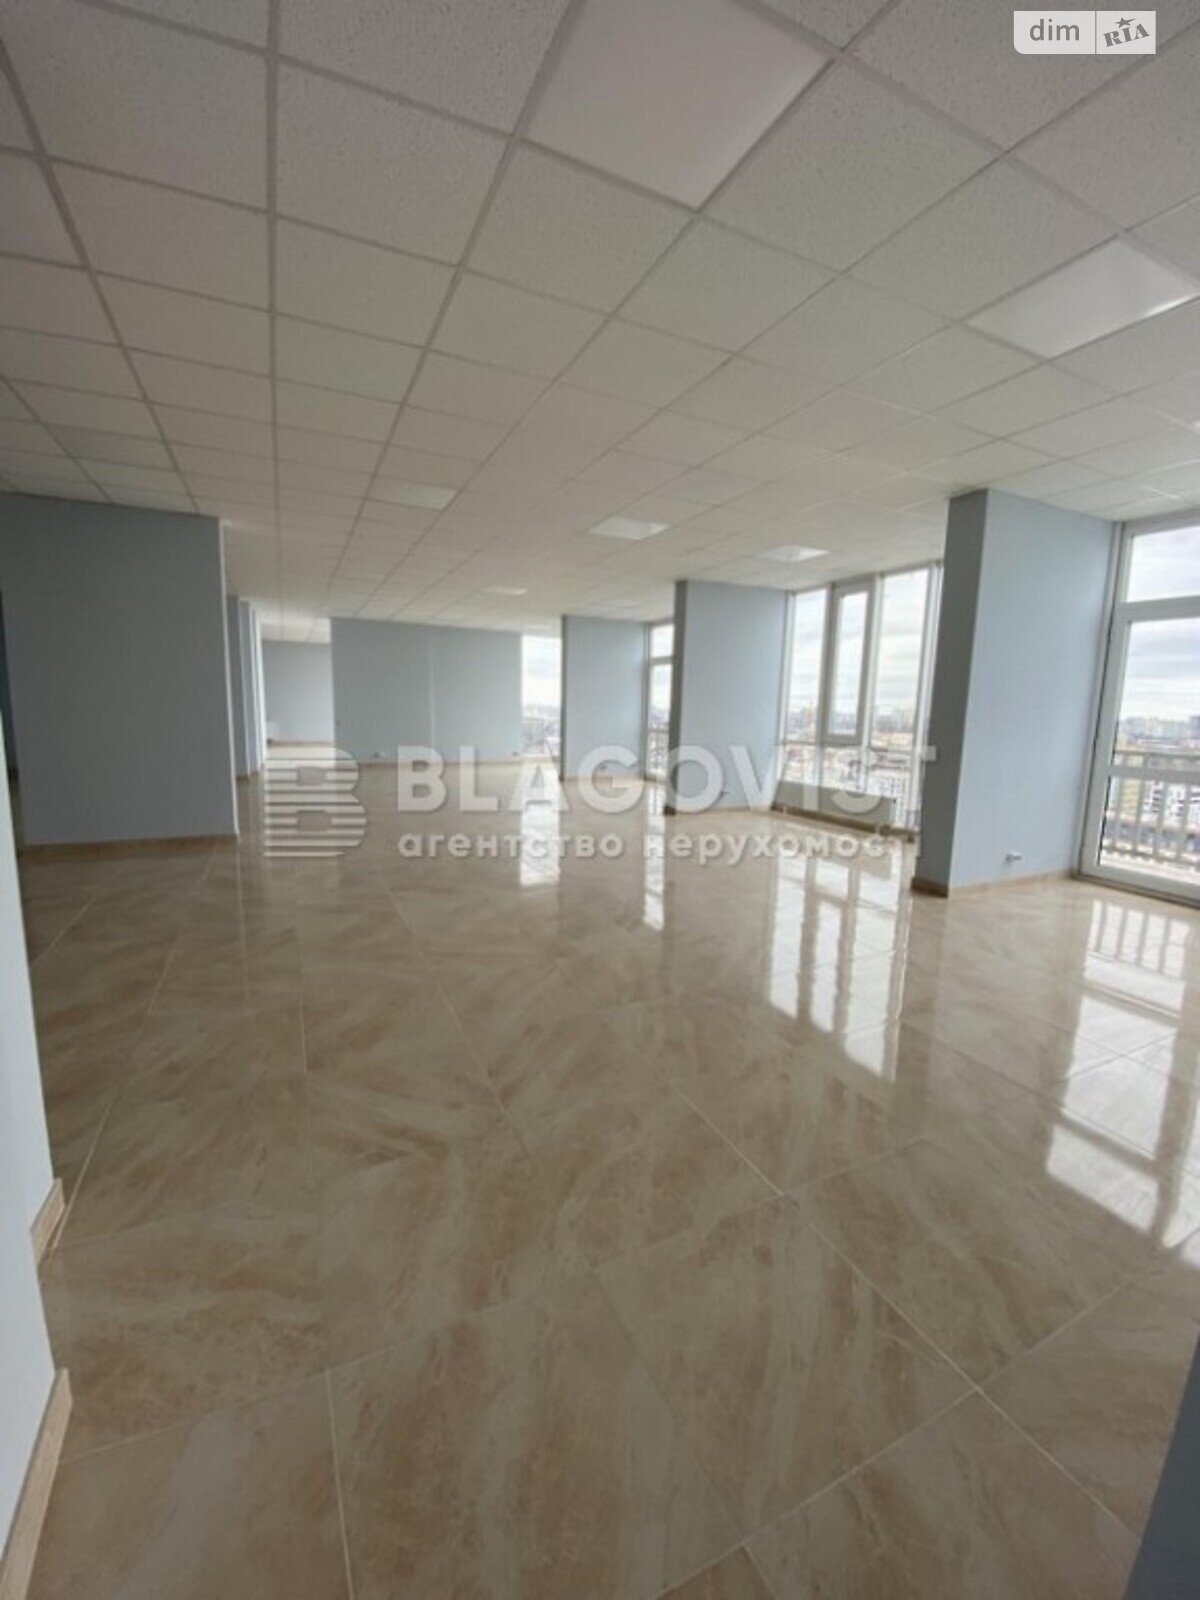 Офисное помещение на 560 кв.м. в Киеве фото 1